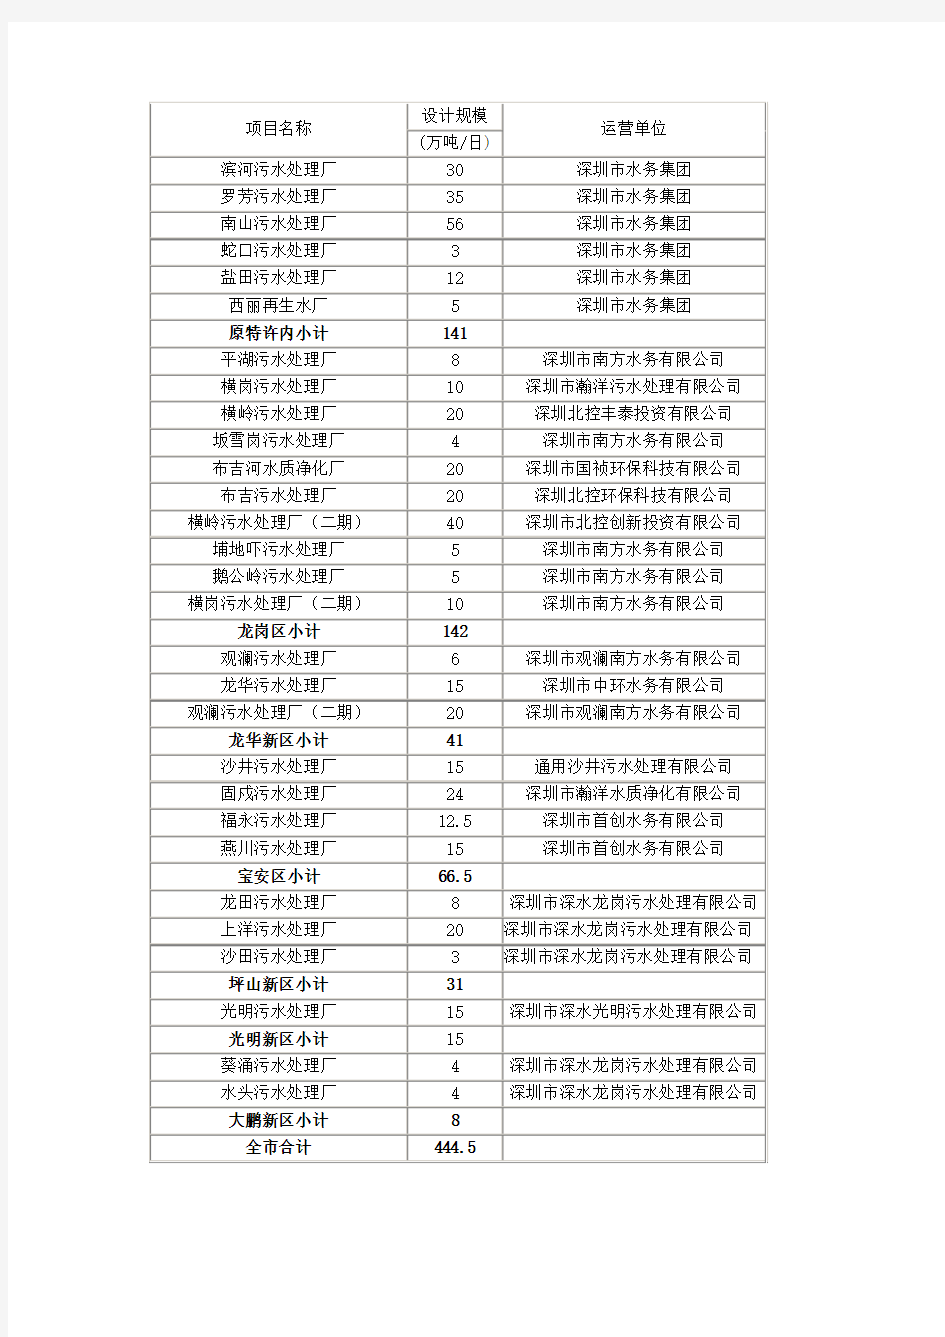 深圳市污水处理厂基本情况表